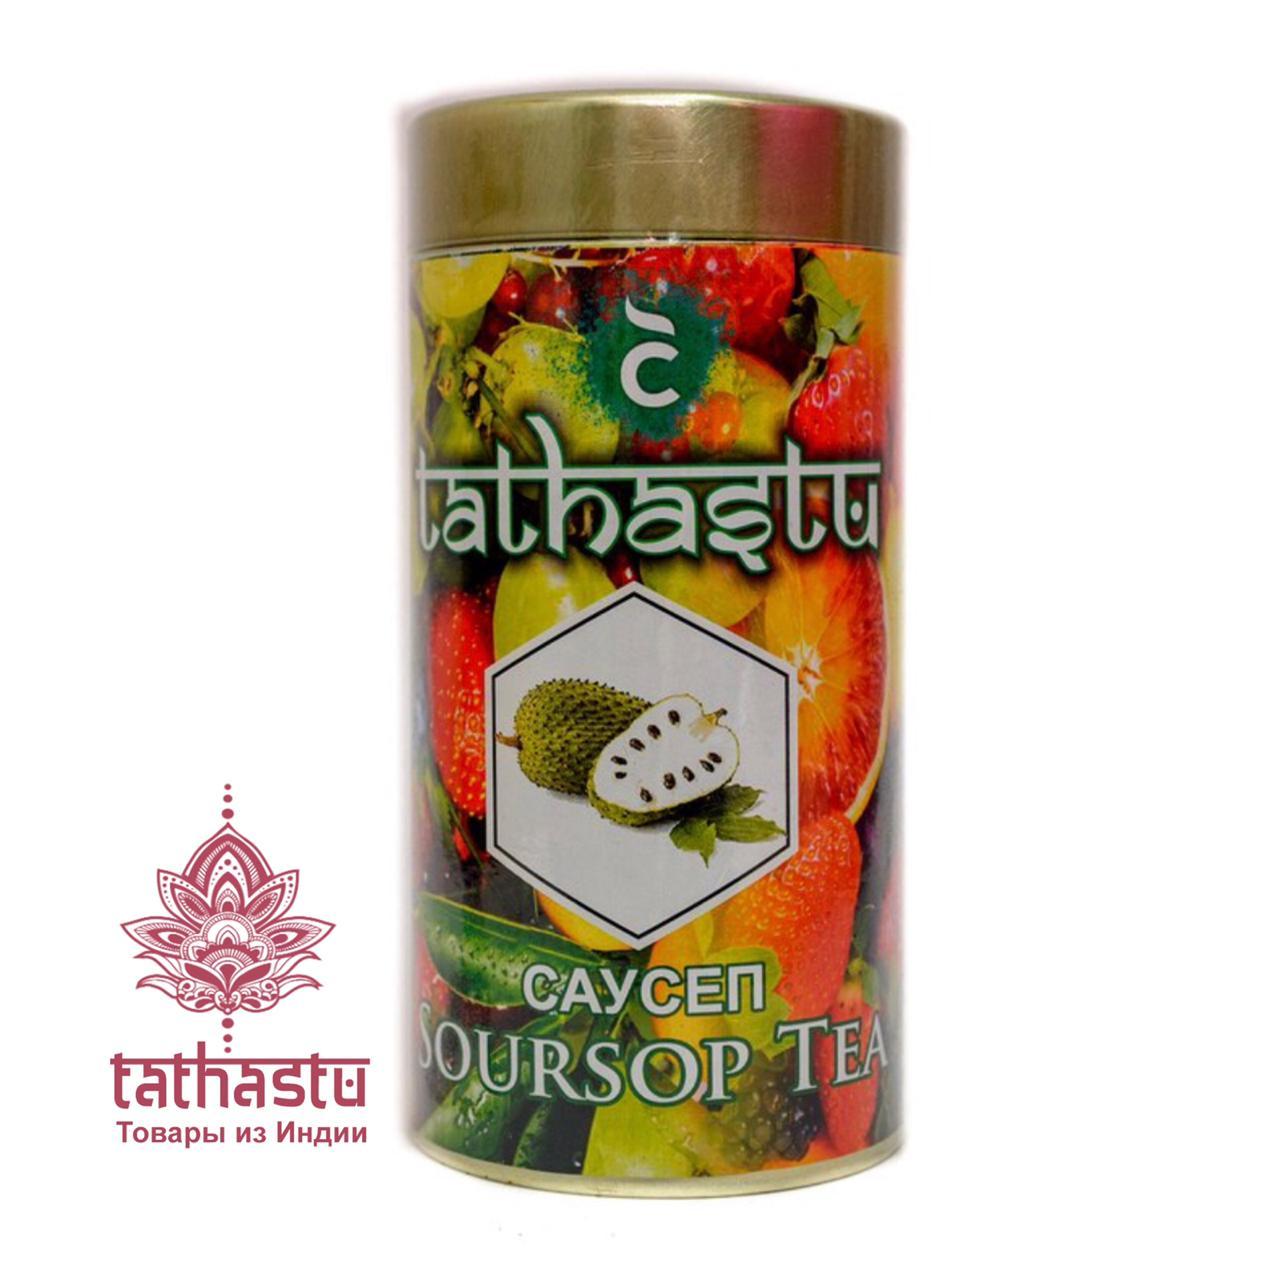 Tathastu чёрный чай с ароматом саусеп. Tathastu товары и индии